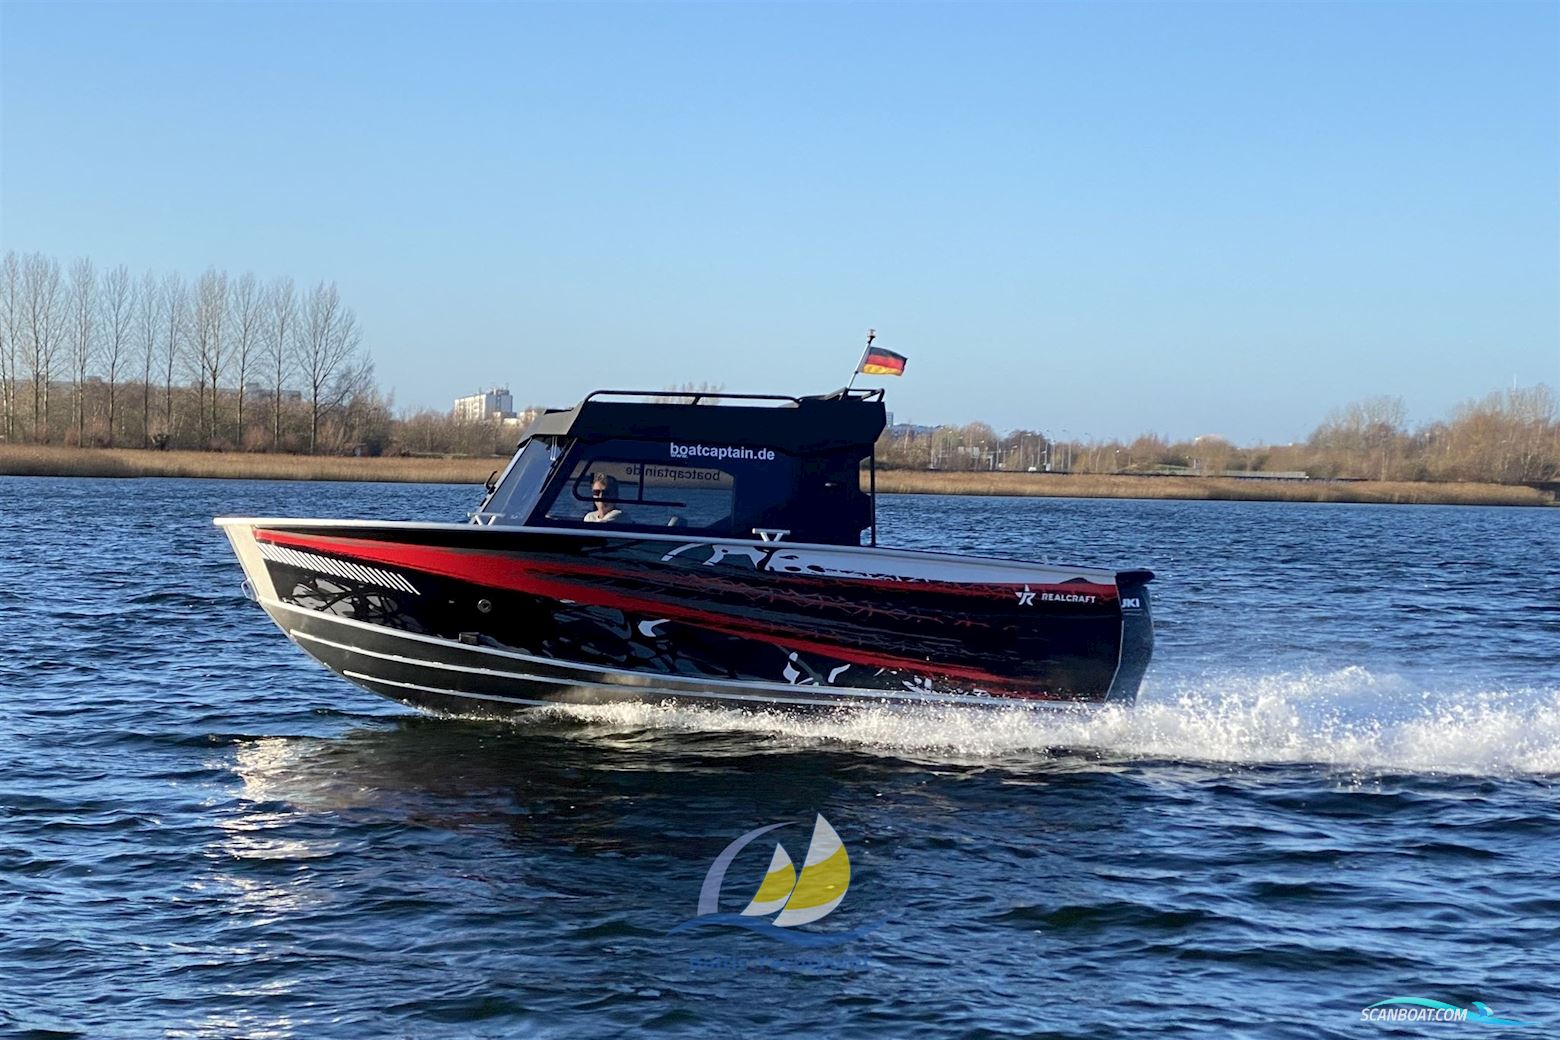 Realcraft 600 Cabine Motorboot 2021, mit Suzuki motor, Deutschland